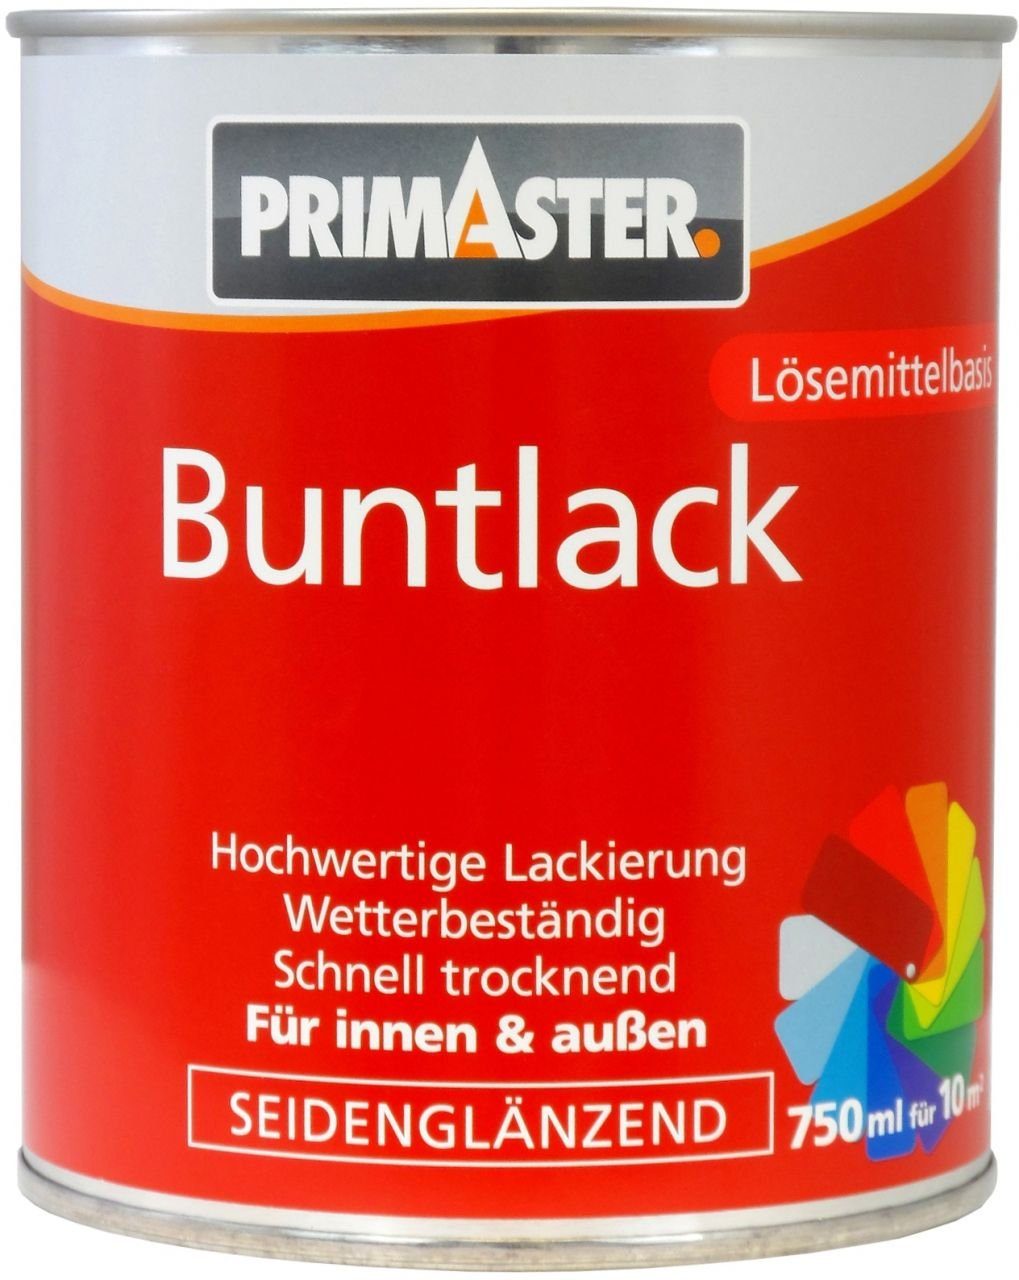 Primaster Buntlack ml 750 Acryl-Buntlack enzianblau 5010 Primaster RAL